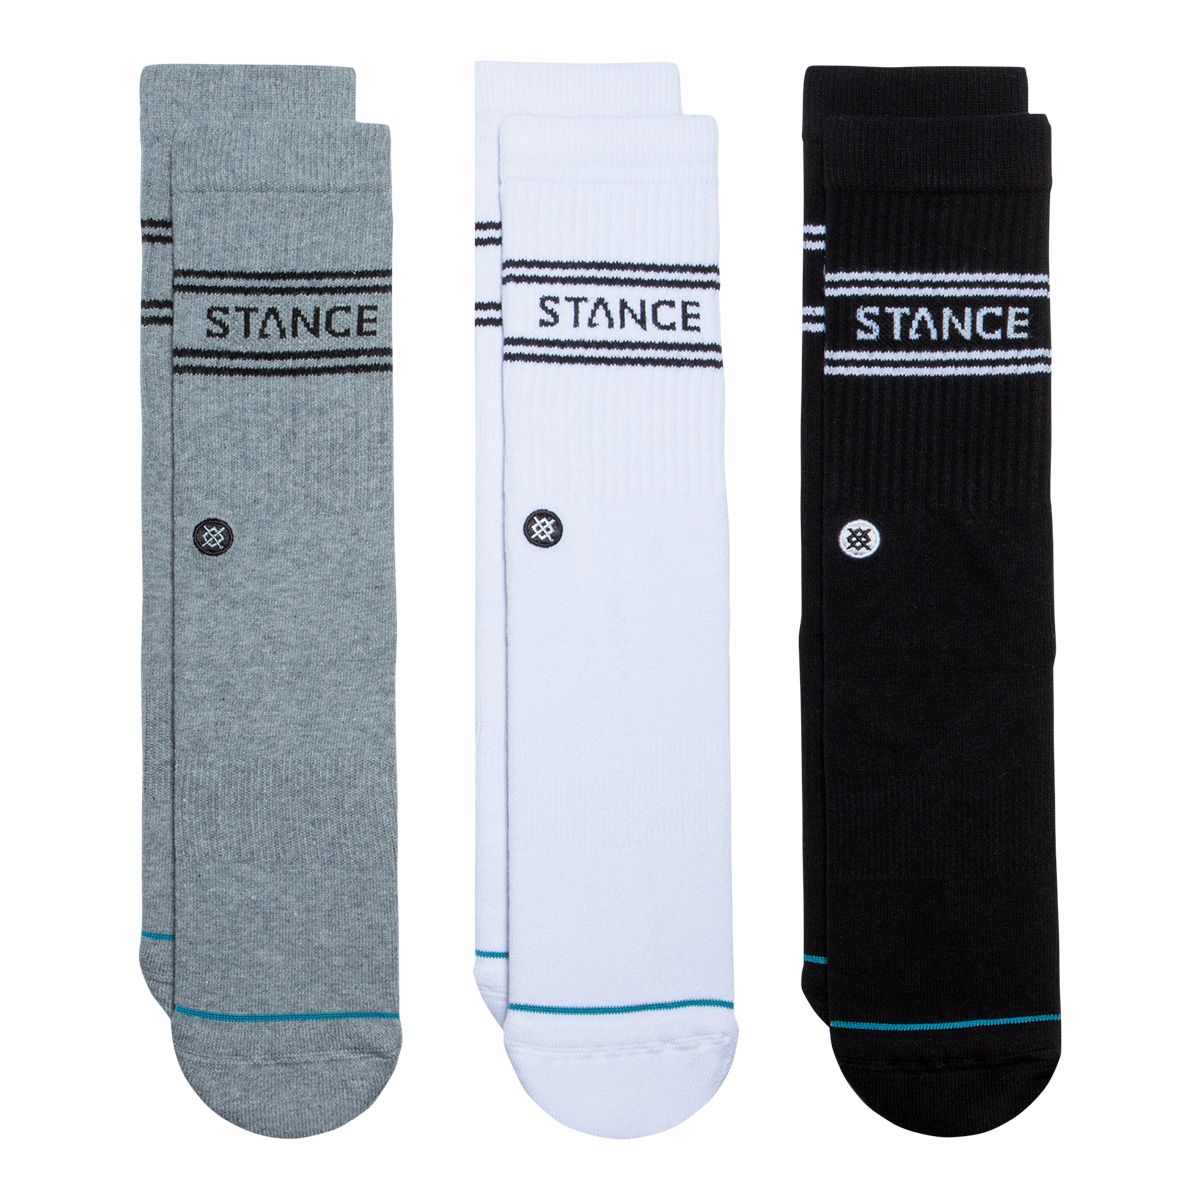 Stance Men's Basic Crew Socks - 3 Pack